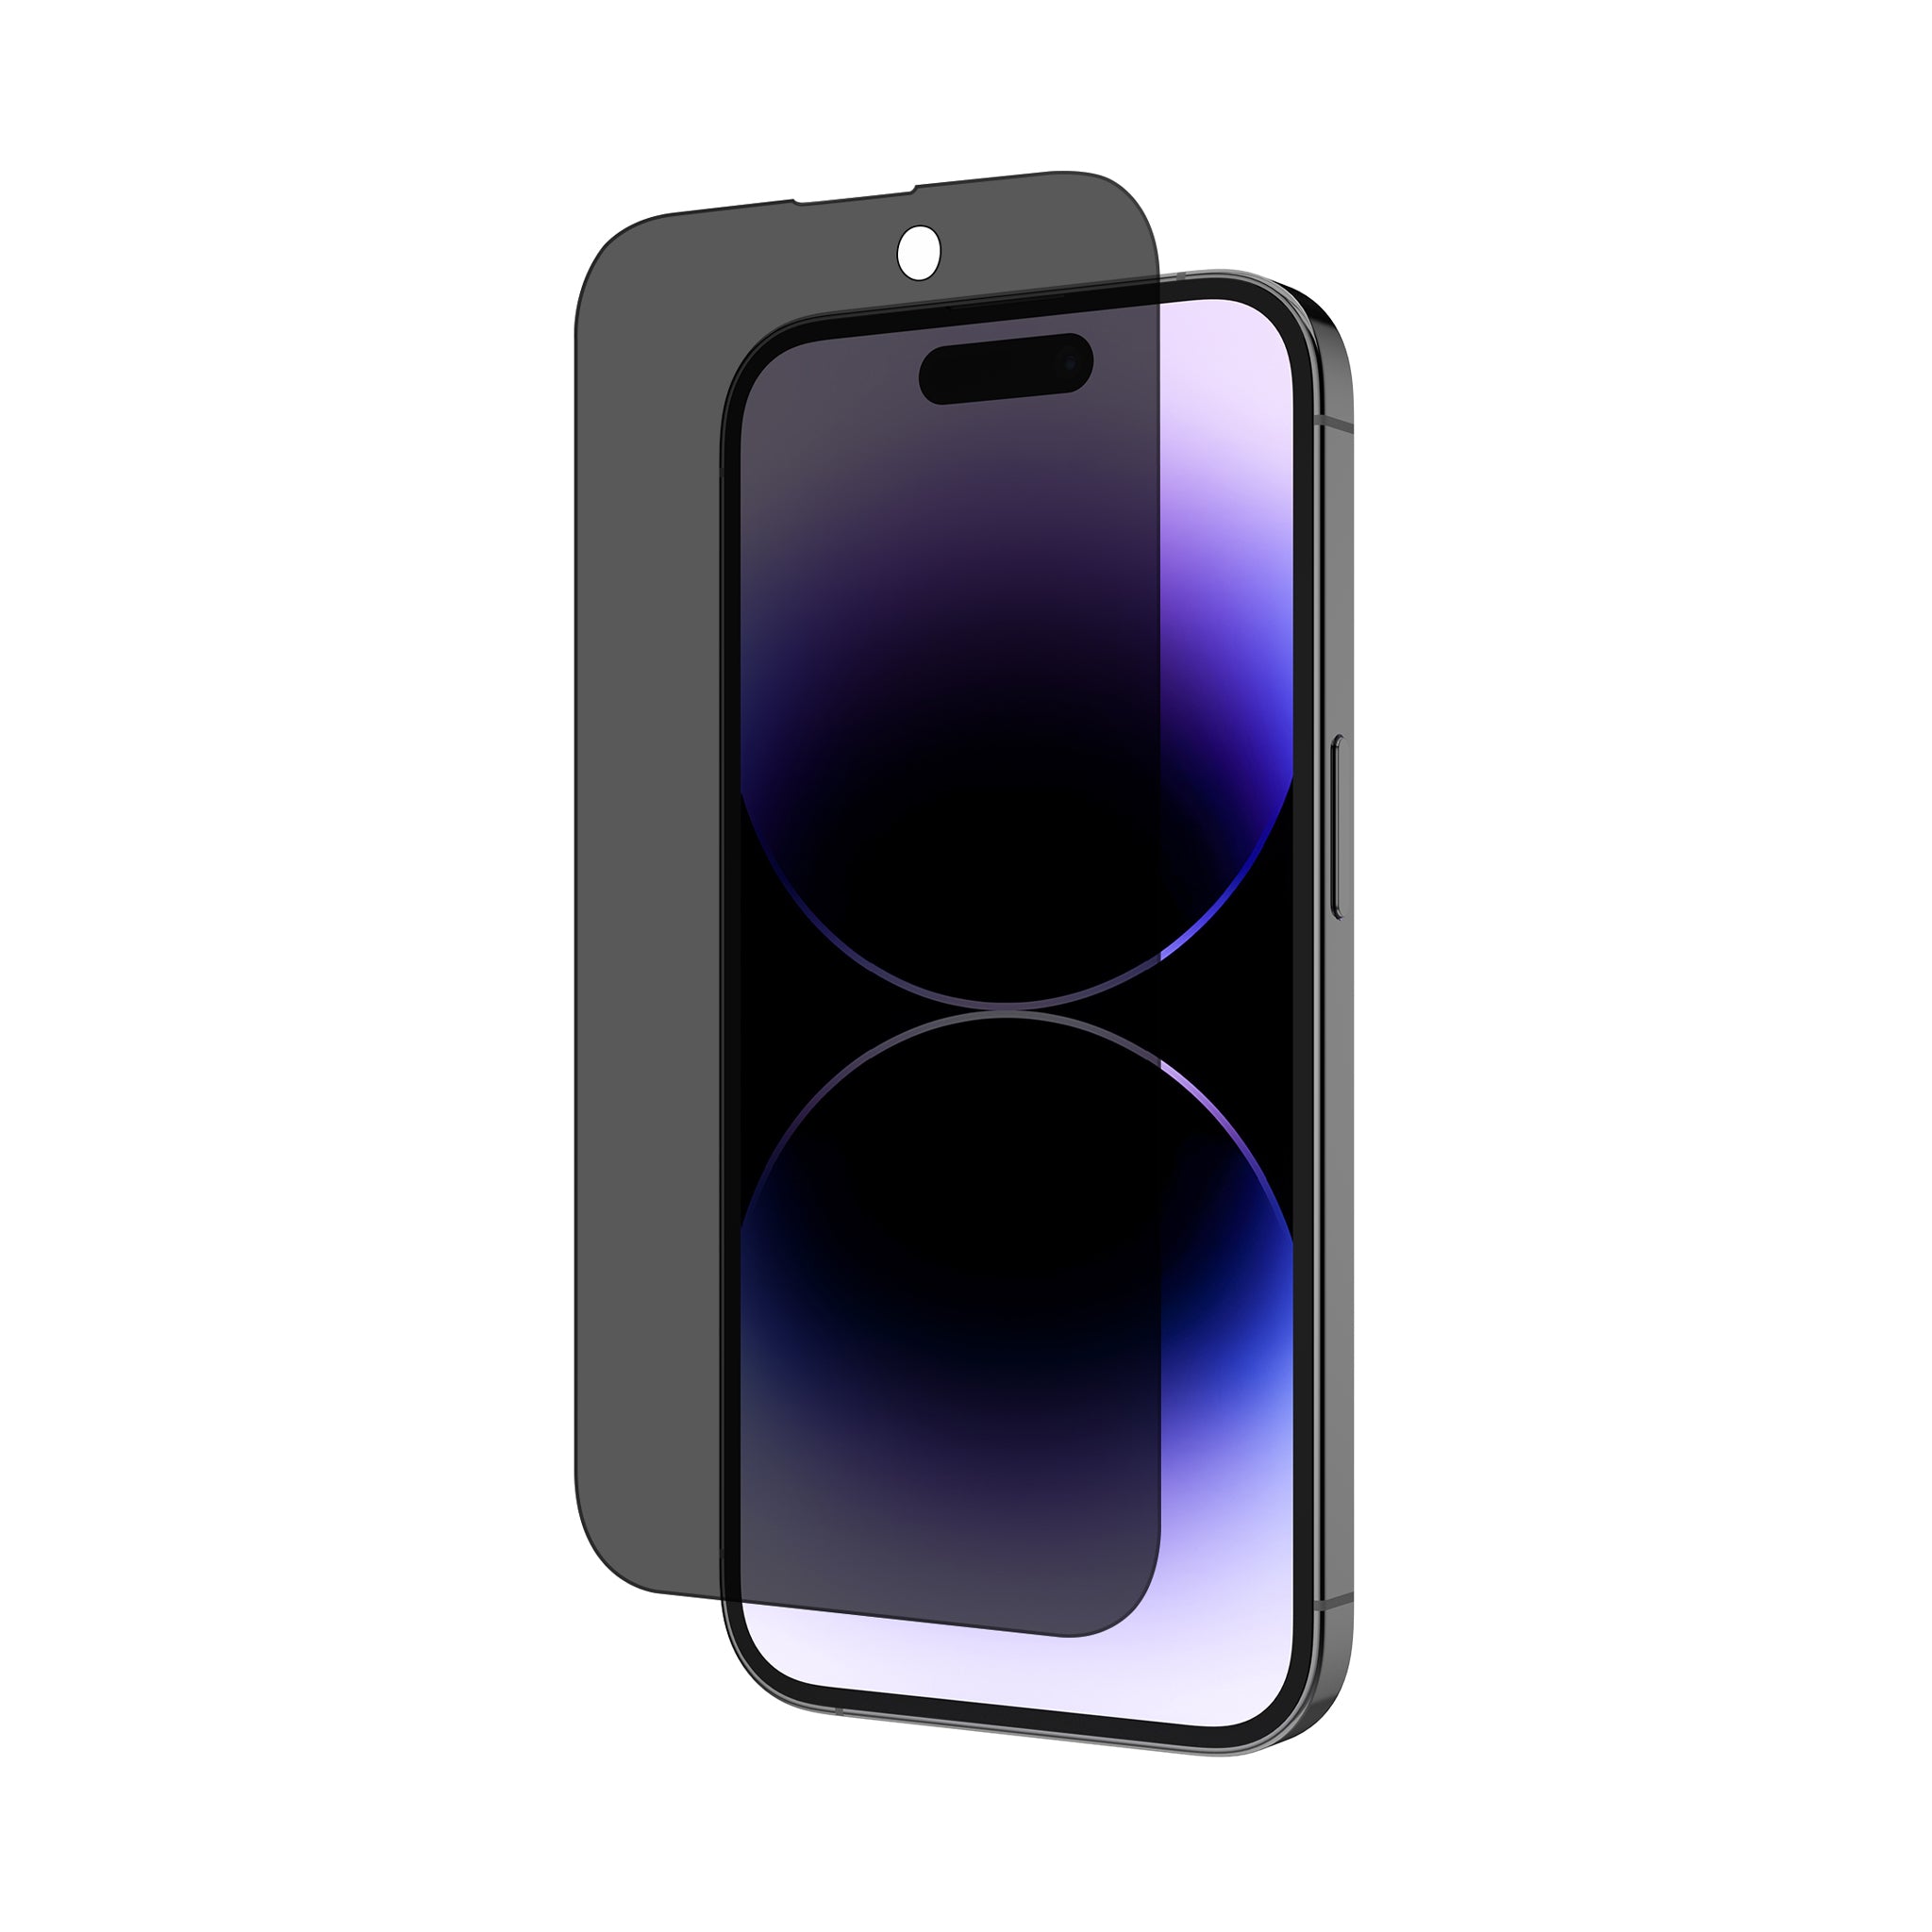 Protector Pantalla Iphone 13 Pro Max Glass